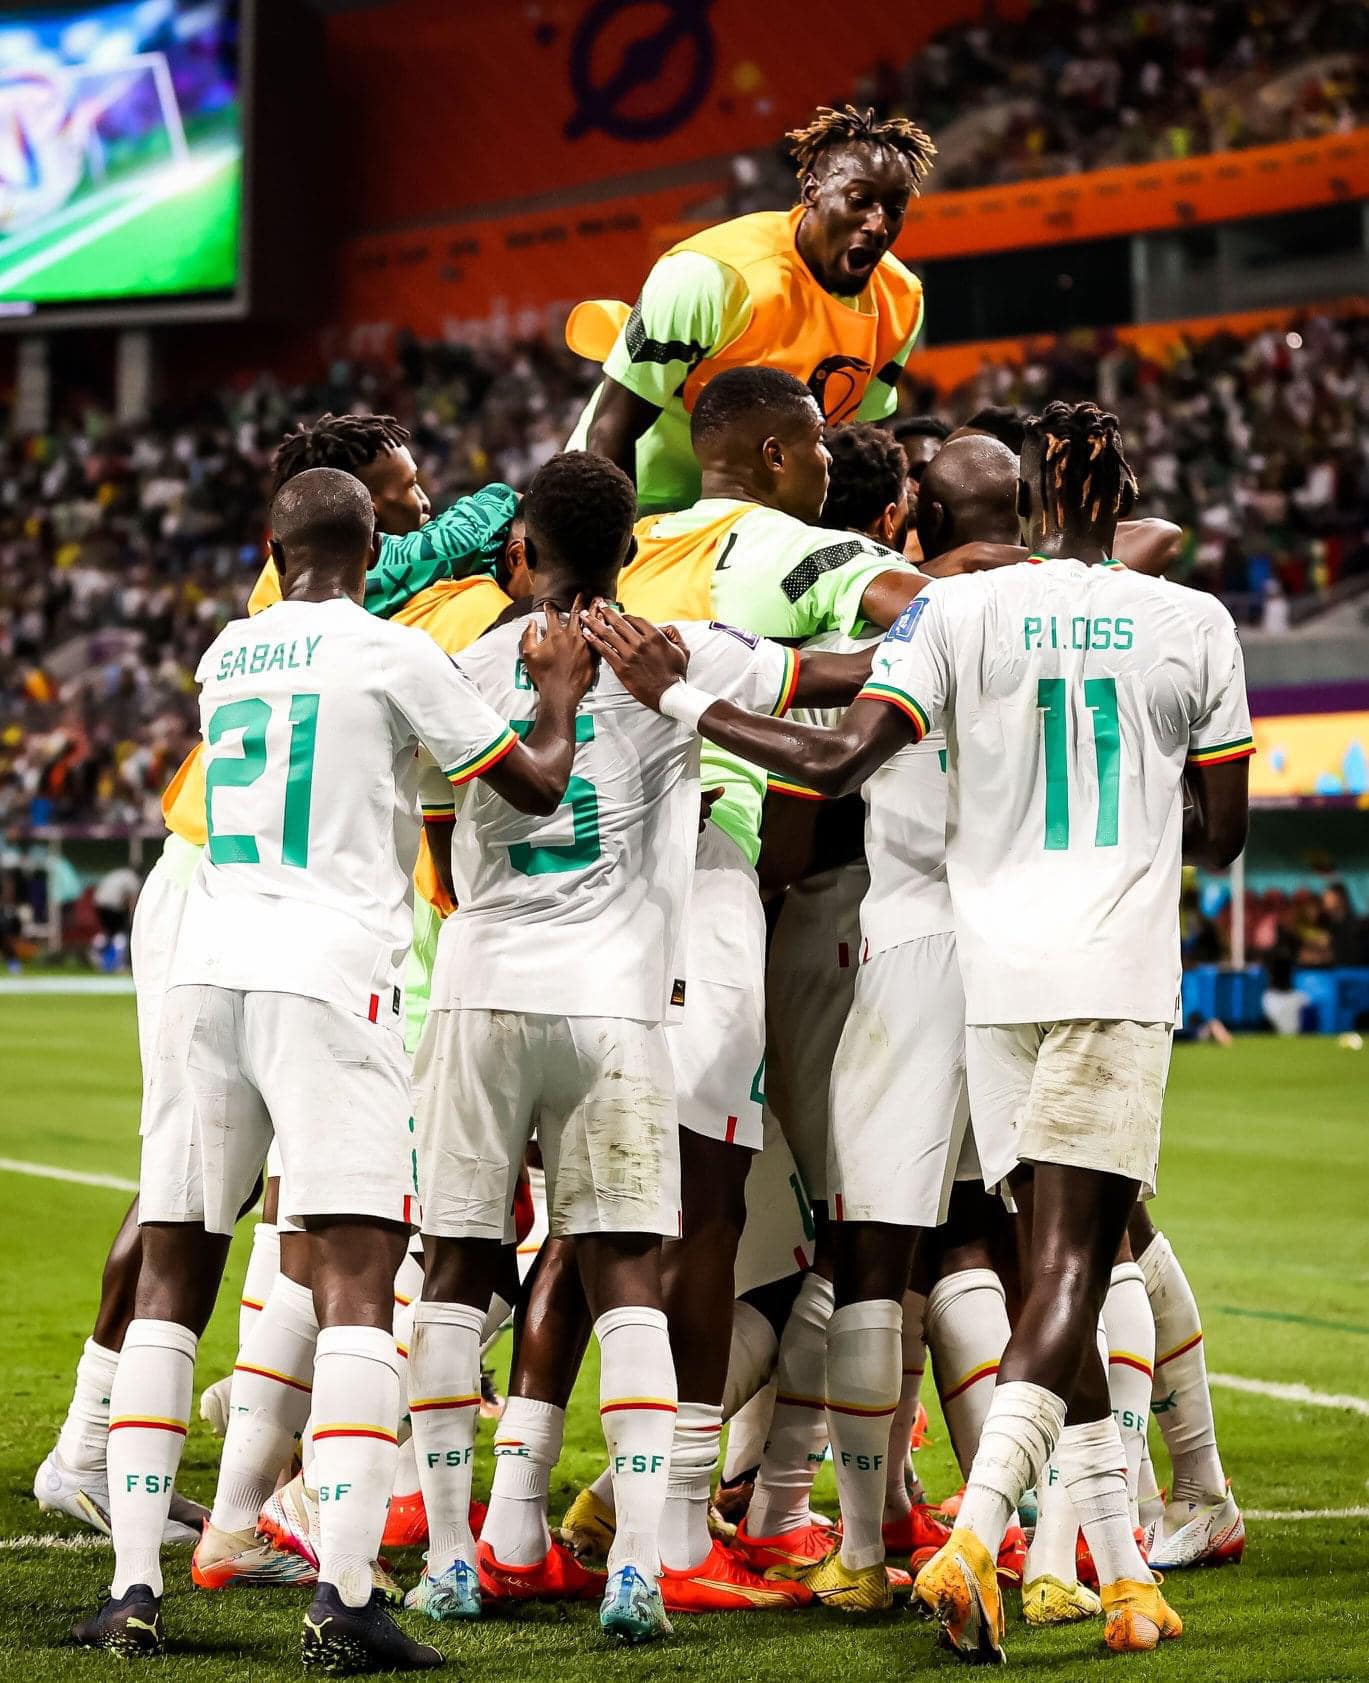 لقاء السنغال × الأكوادور كامل في كأس العالم 2022 قطر بتعليق محمد بركات